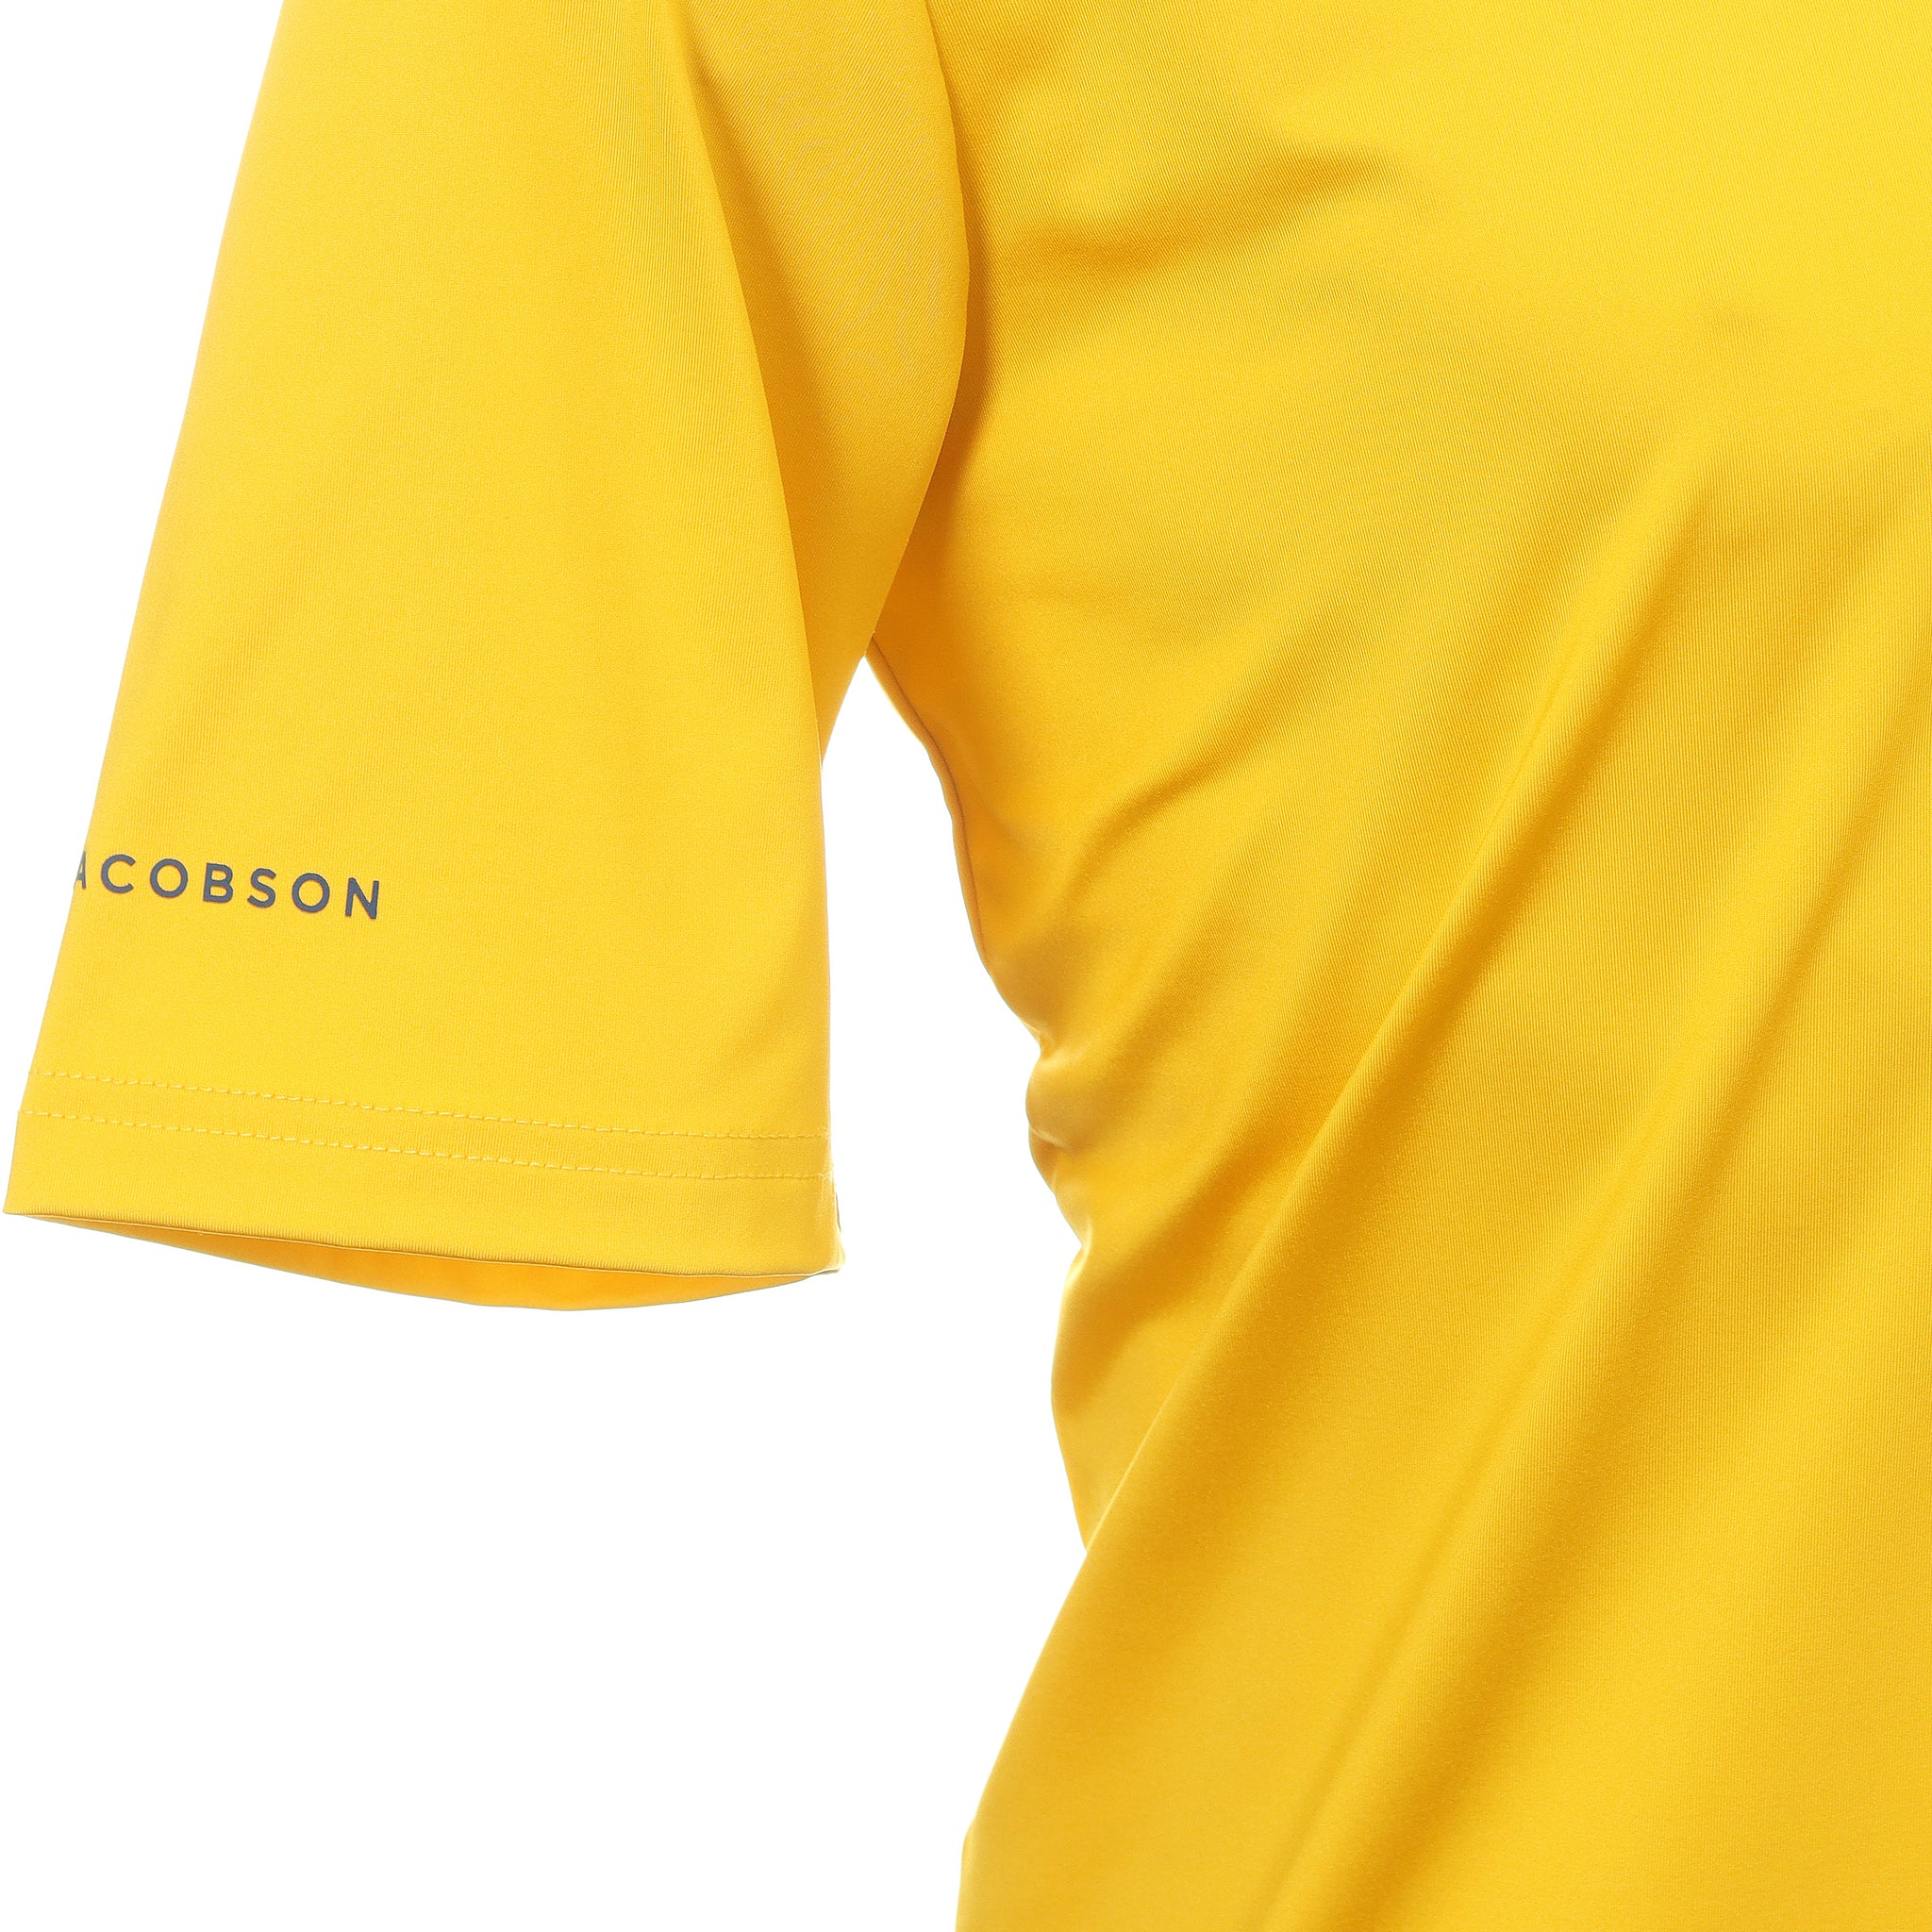 oscar-jacobson-chap-ii-tour-shirt-ojts0041-ochre-teal